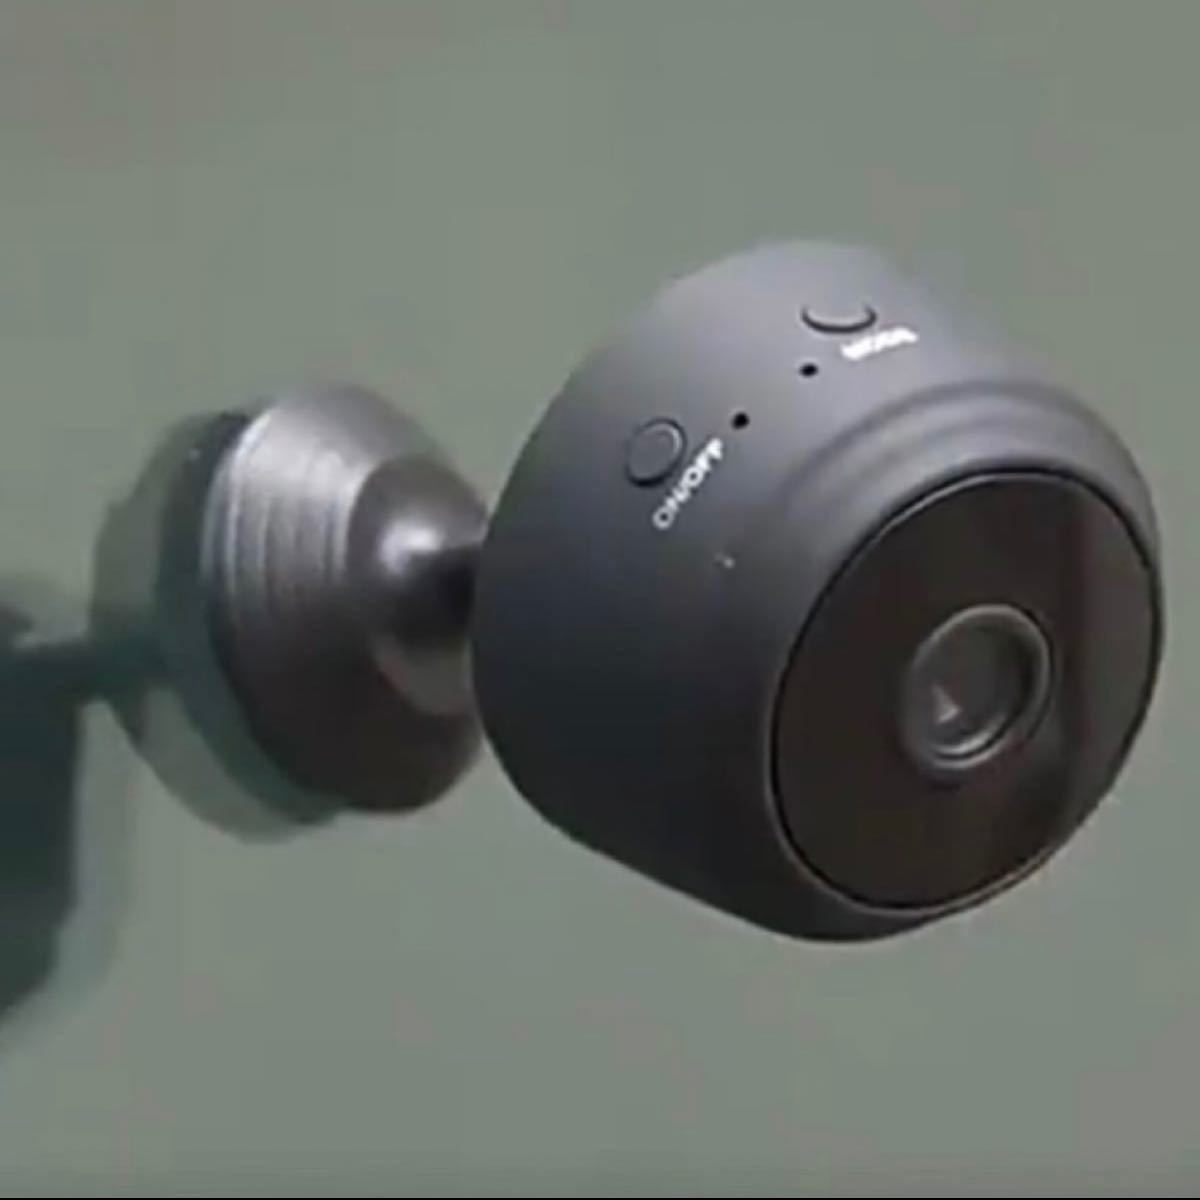 超小型ビデオカメラ 1080P高画質 Wi-Fi可能 防犯カメラ  ドライブレコーダー 監視カメラ 